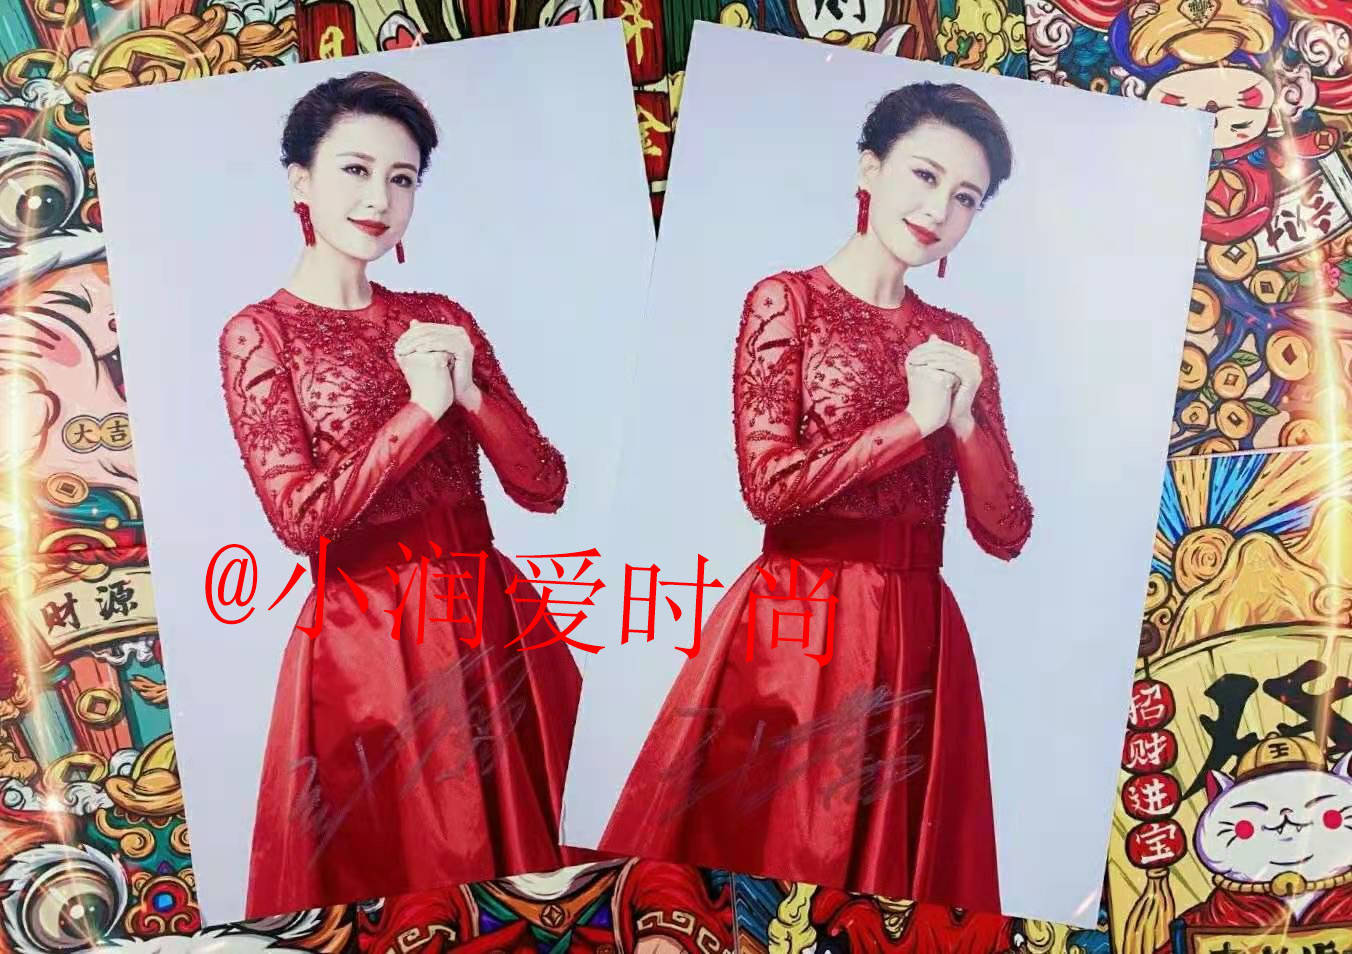 张蕾穿中国红礼服主持春晚,端庄大方不俗气,配上盘发发型好高贵